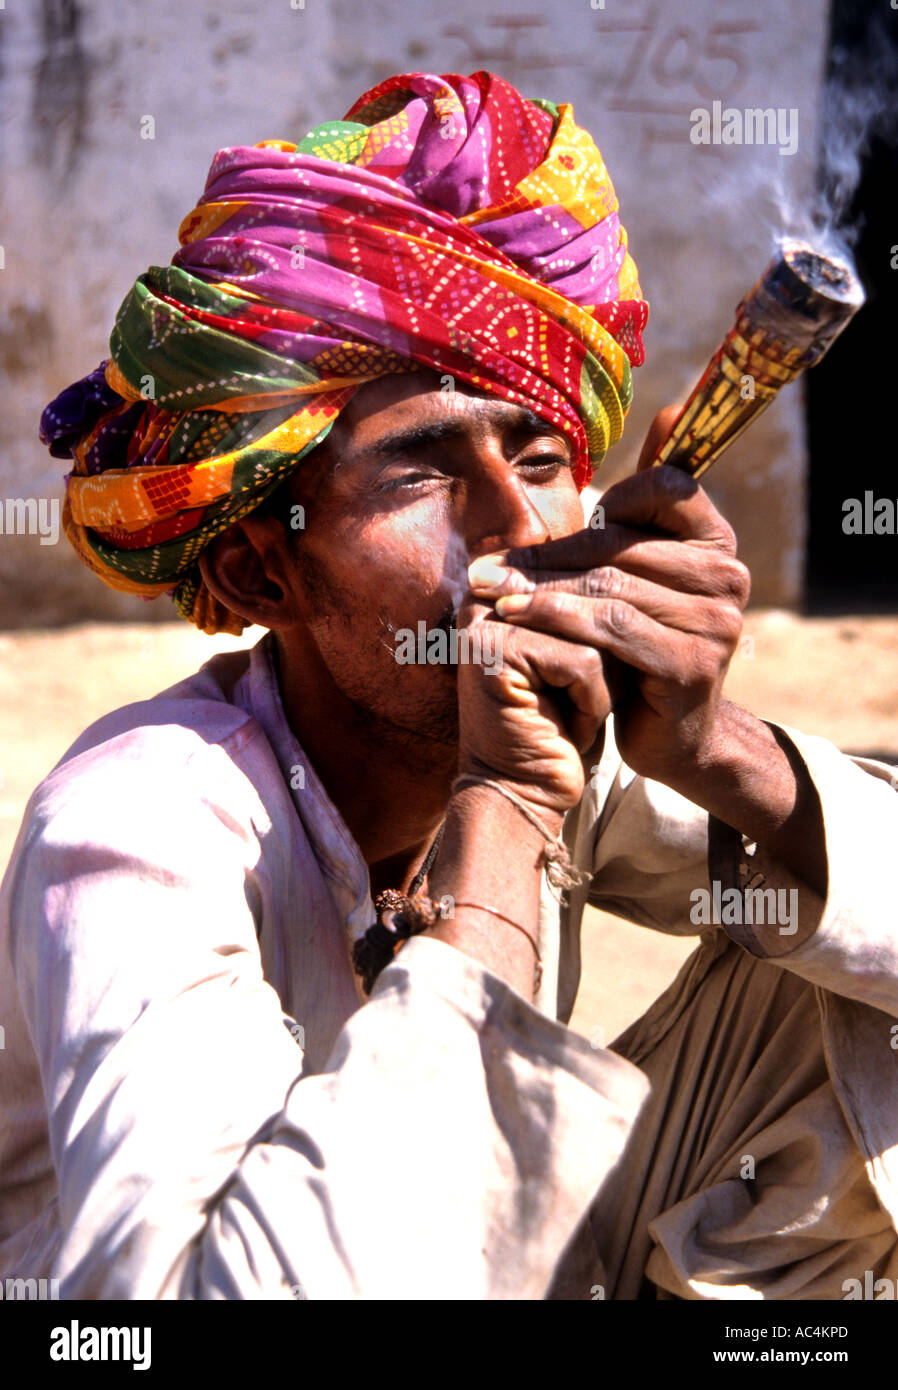 india-rajasthan-hash-hashish-smoking-pipe-man-drug-AC4KPD.jpg